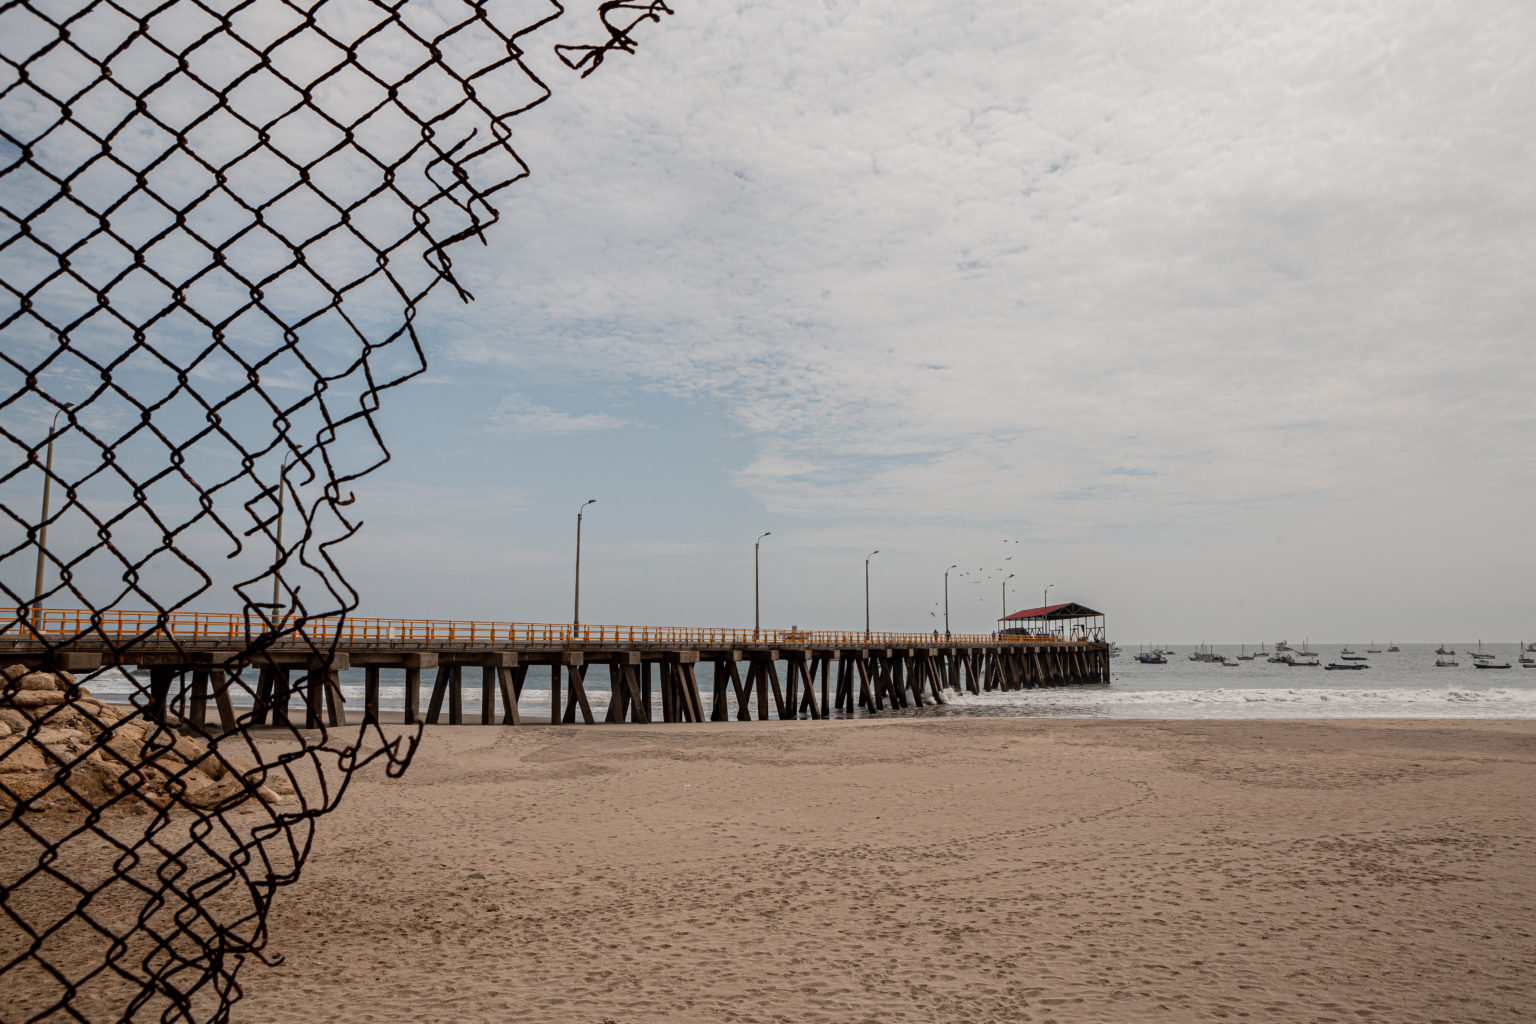 A beach through a wire fence